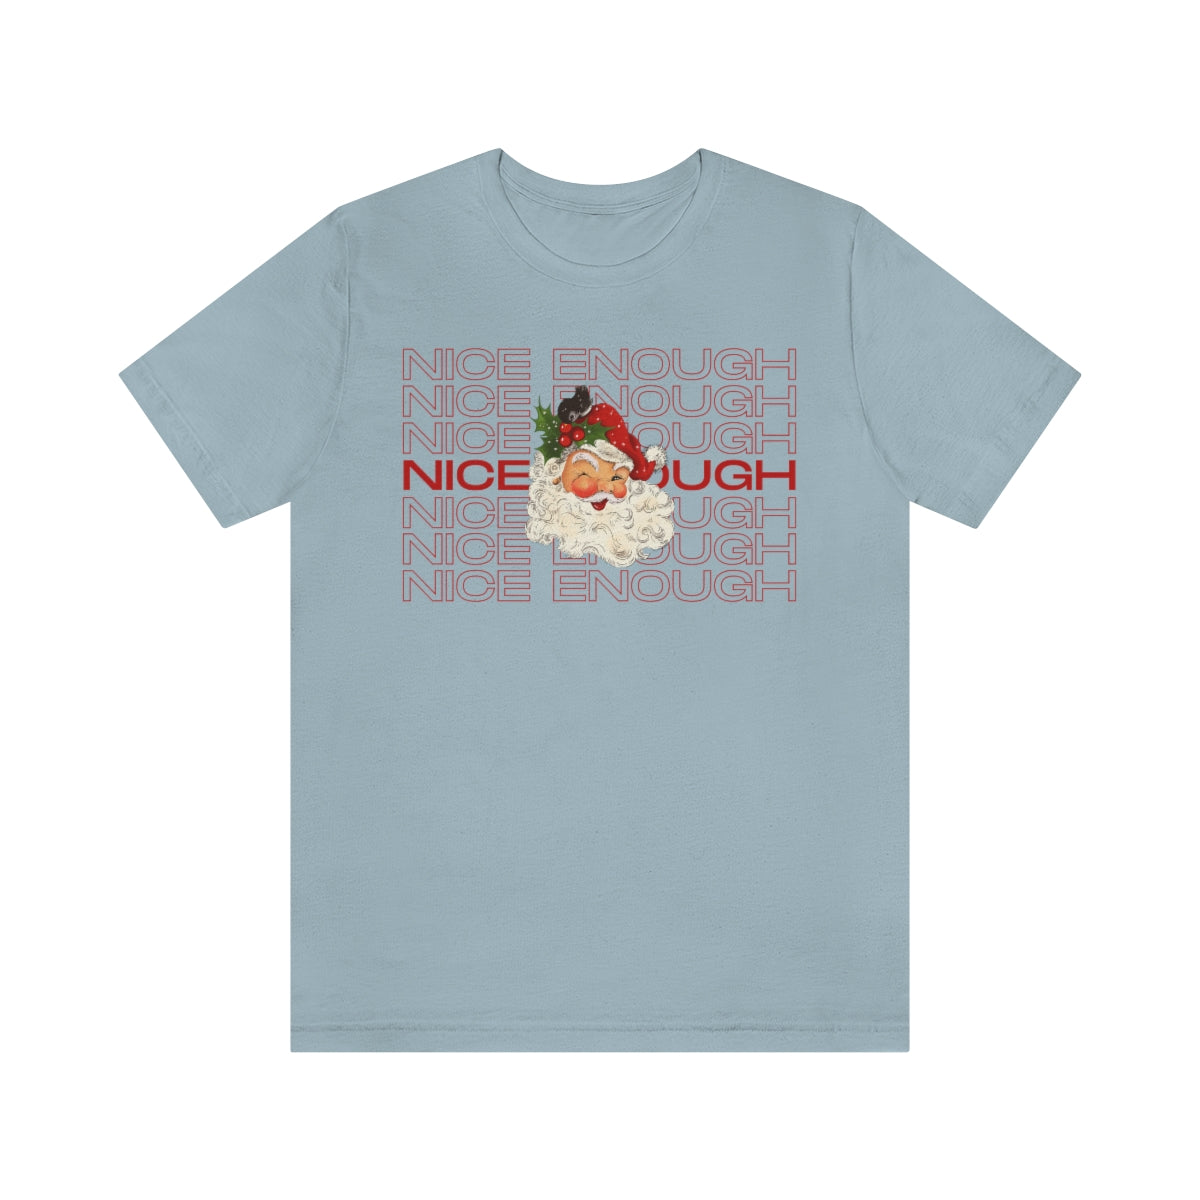 Naughty Nice Enough Funny Holiday Retro Santa Shirt